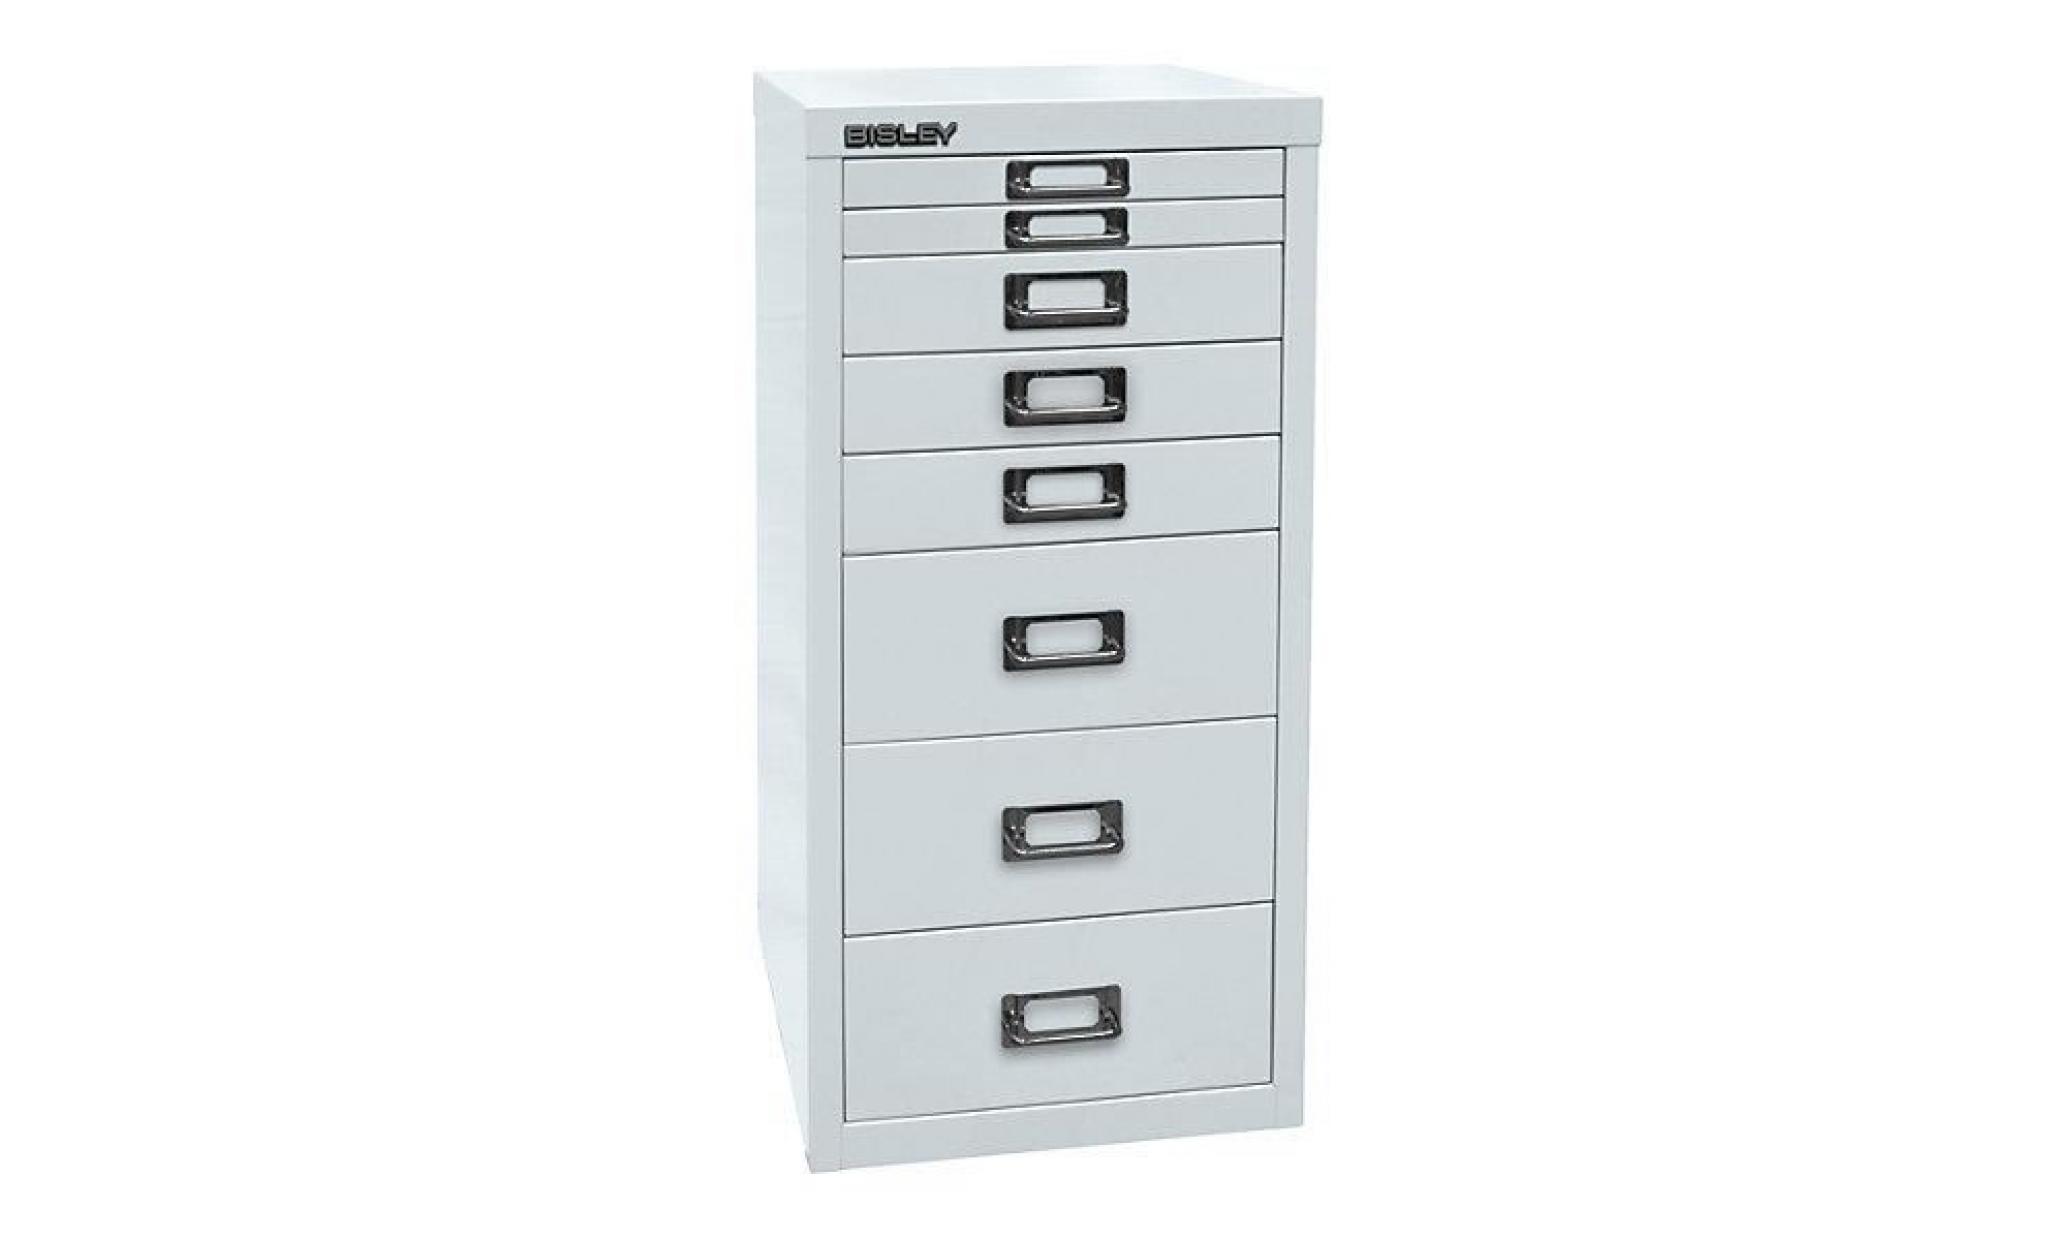 bisley multidrawer™ série 29   format a4, 8 tiroirs gris clair   armoire basse armoire de bureau armoire à tiroirs armoires basses